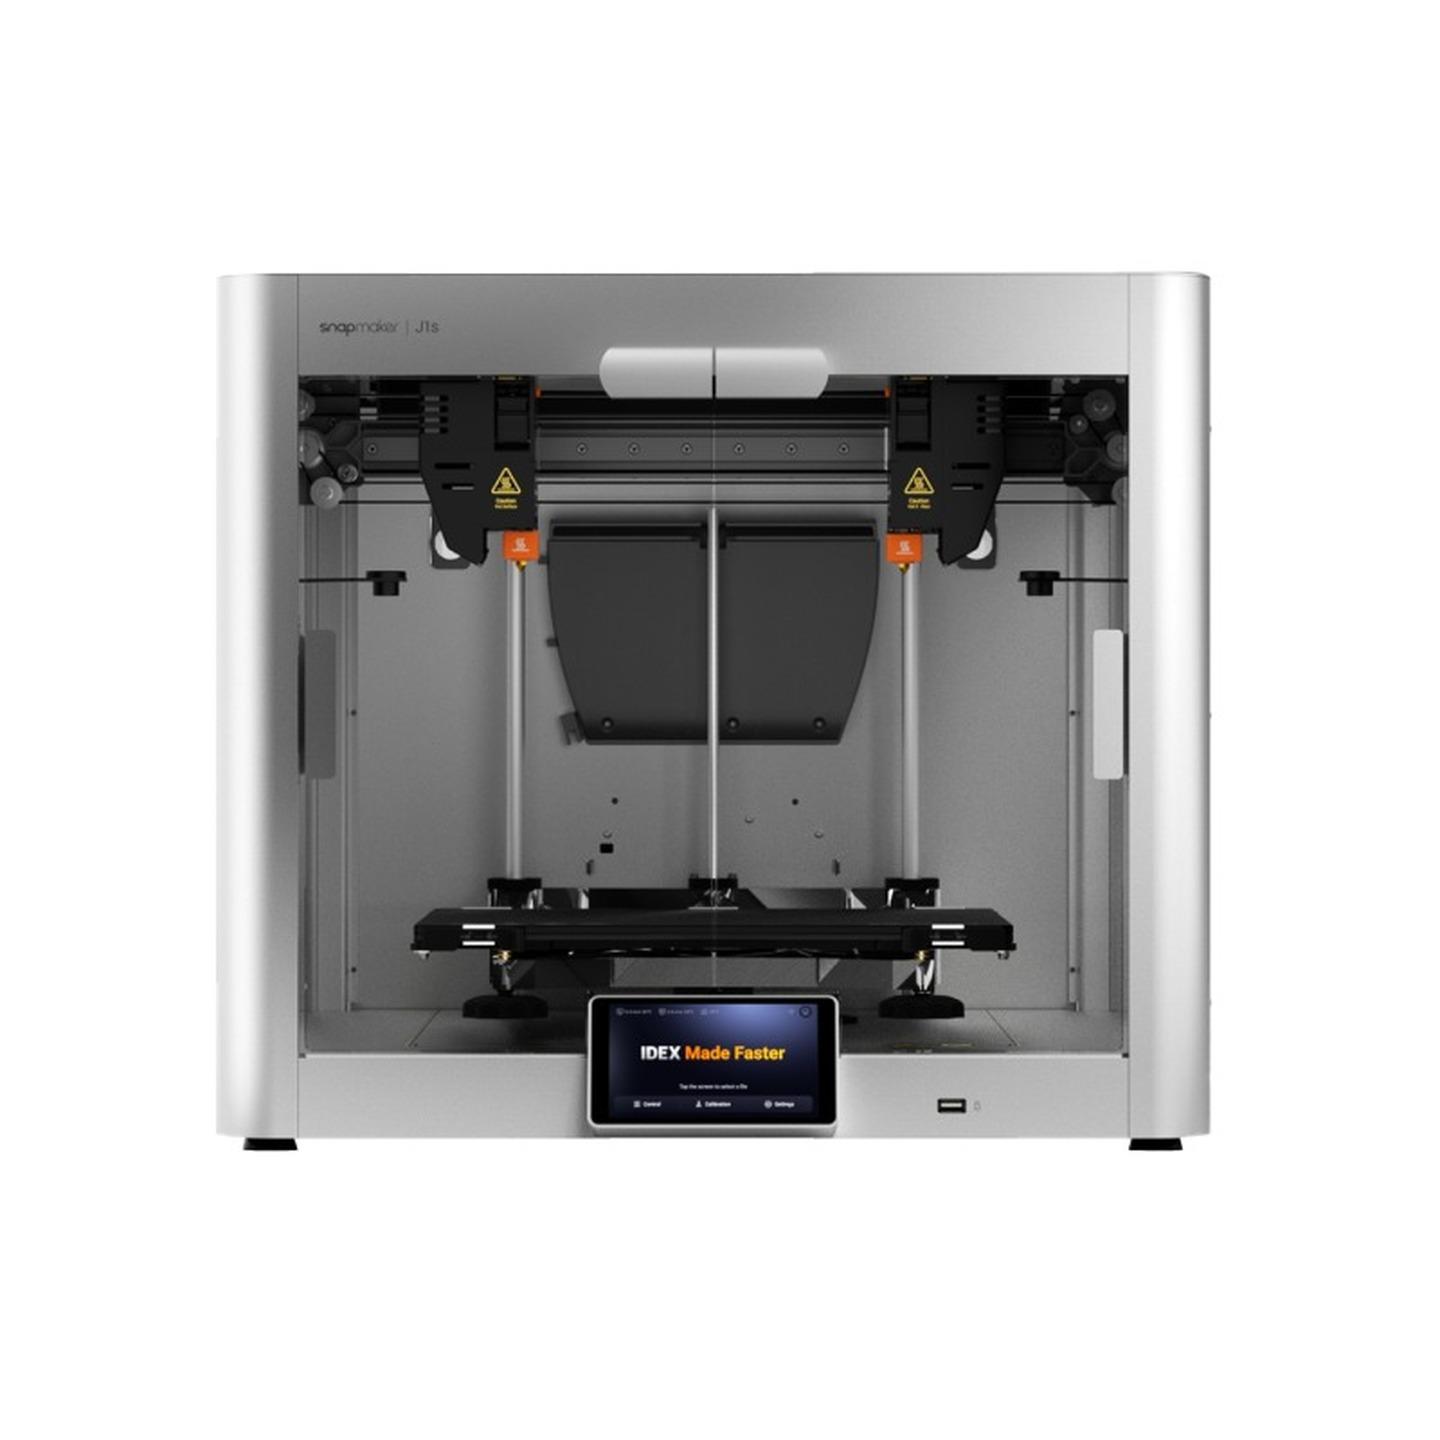 Snapmaker J1s IDEX FDM 3D Printer